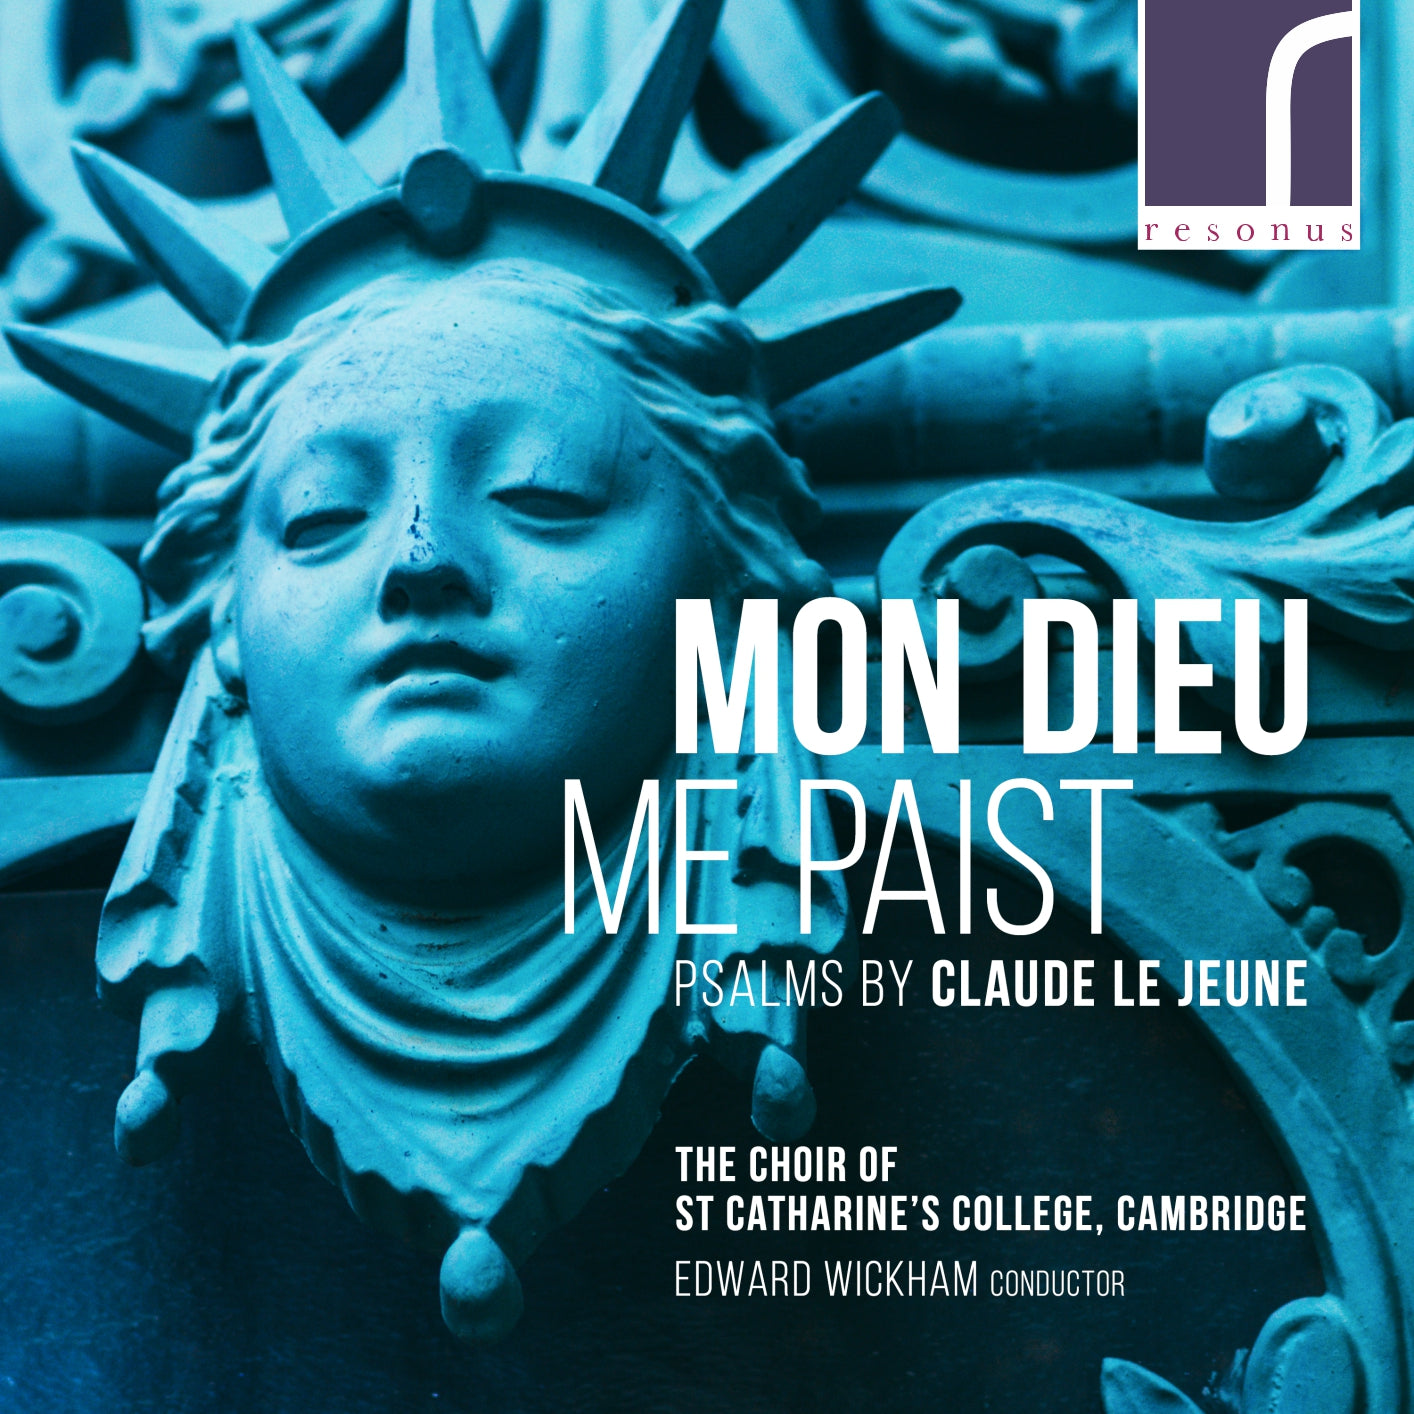 Mon Dieu me paist: Psalms by Claude Le Jeune